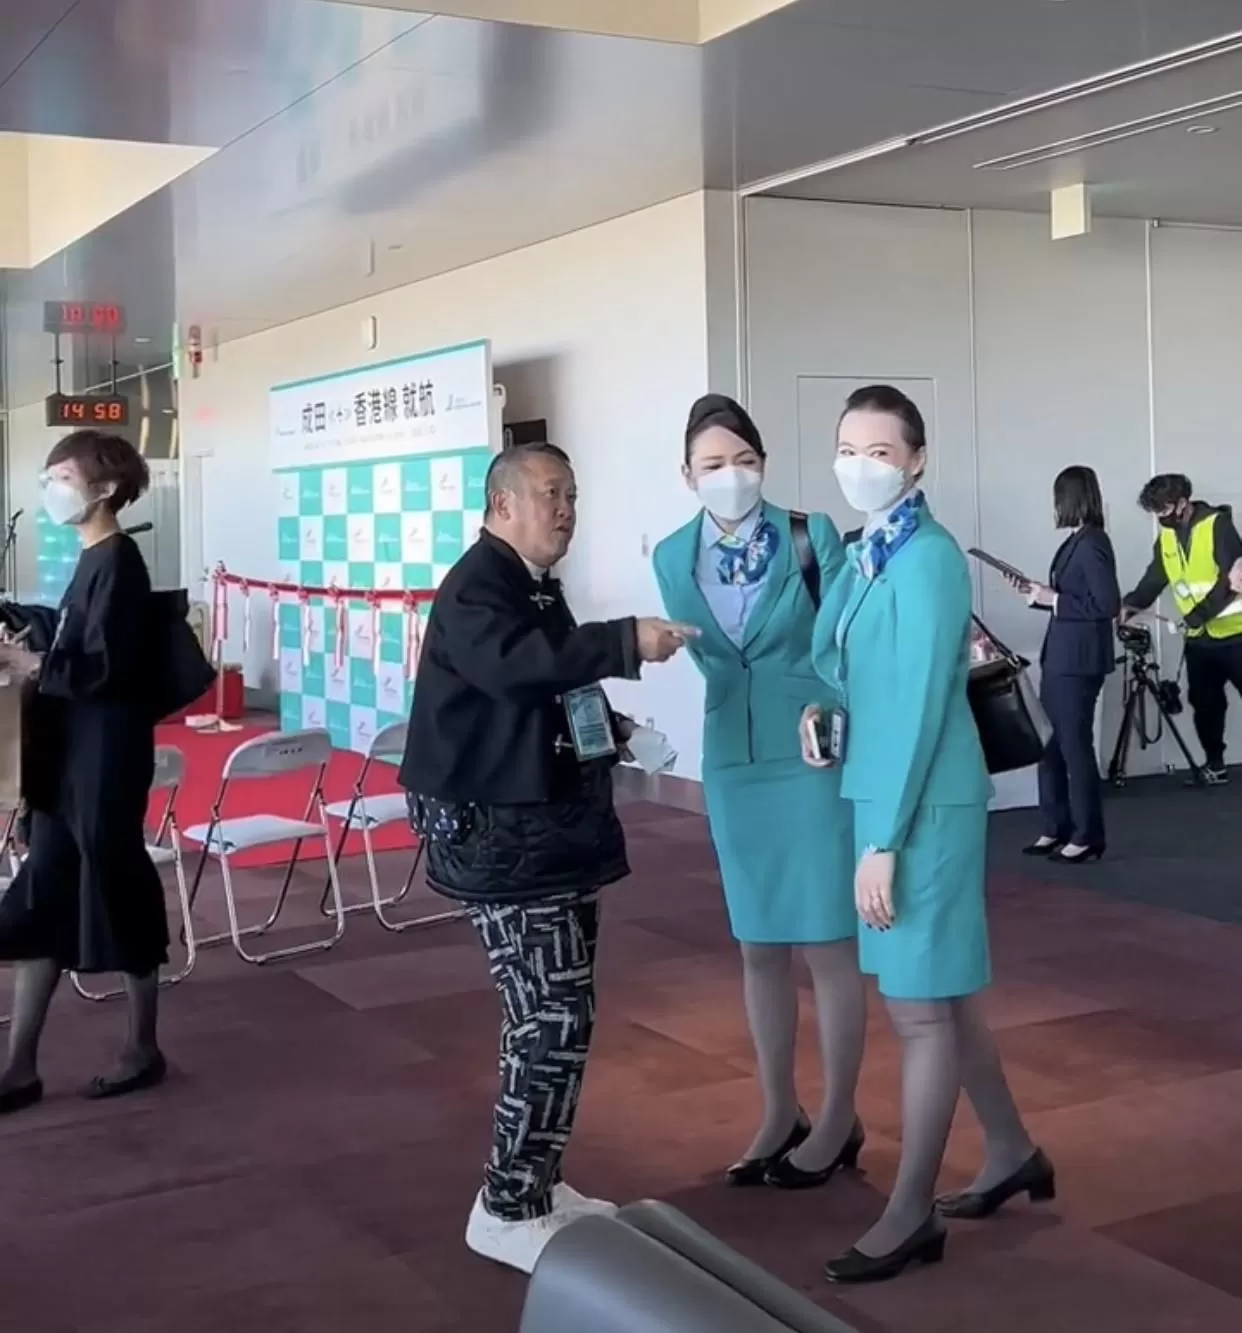 曾志伟在日本与空姐热聊 主动搂女粉肩膀引争议 